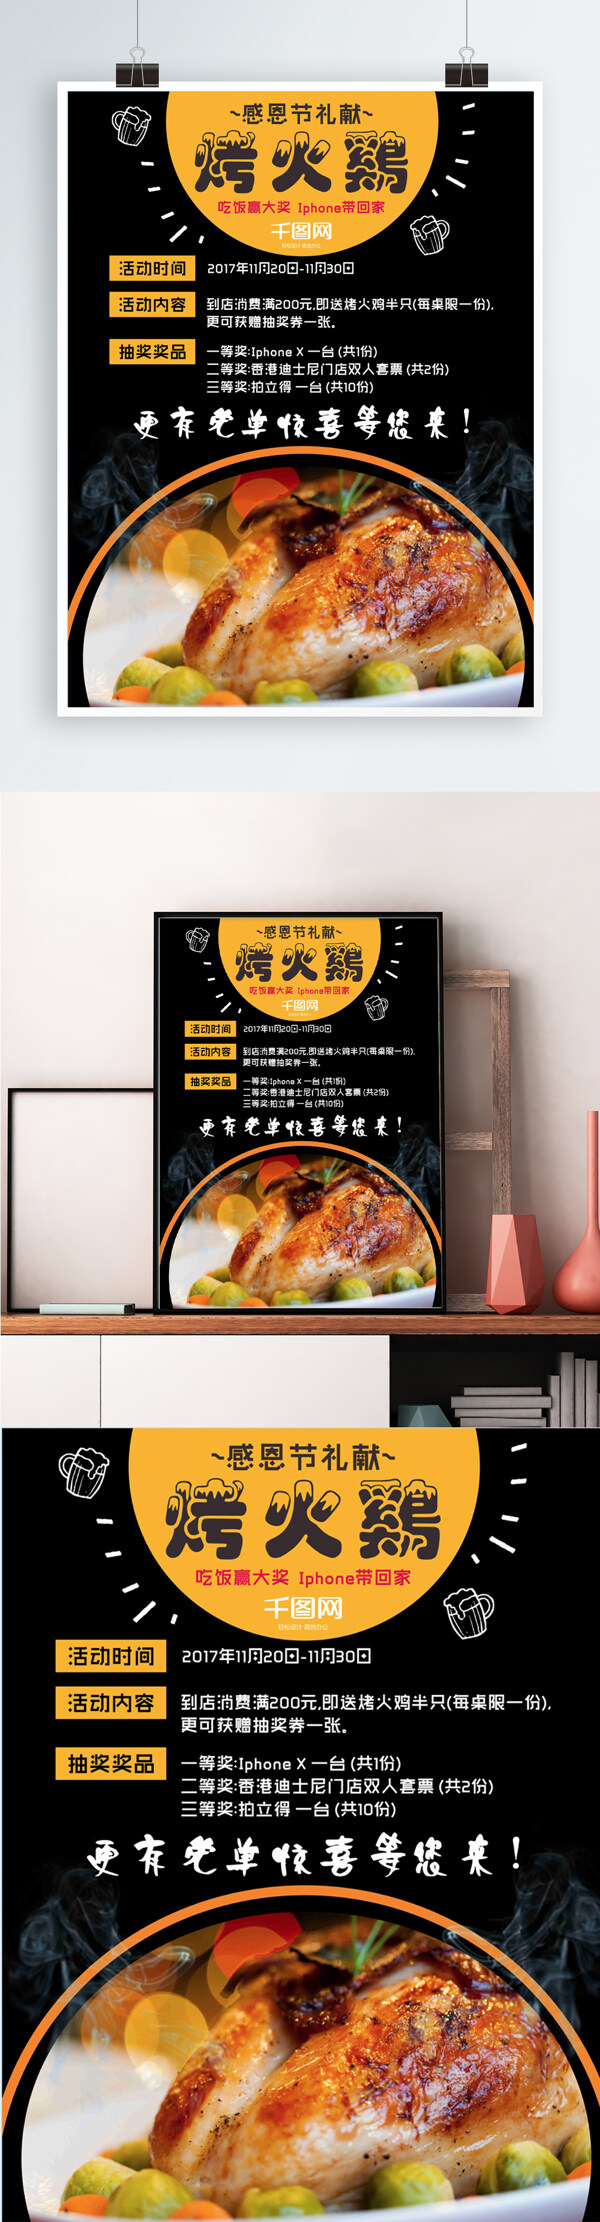 感恩节餐厅烤火鸡黑色海报